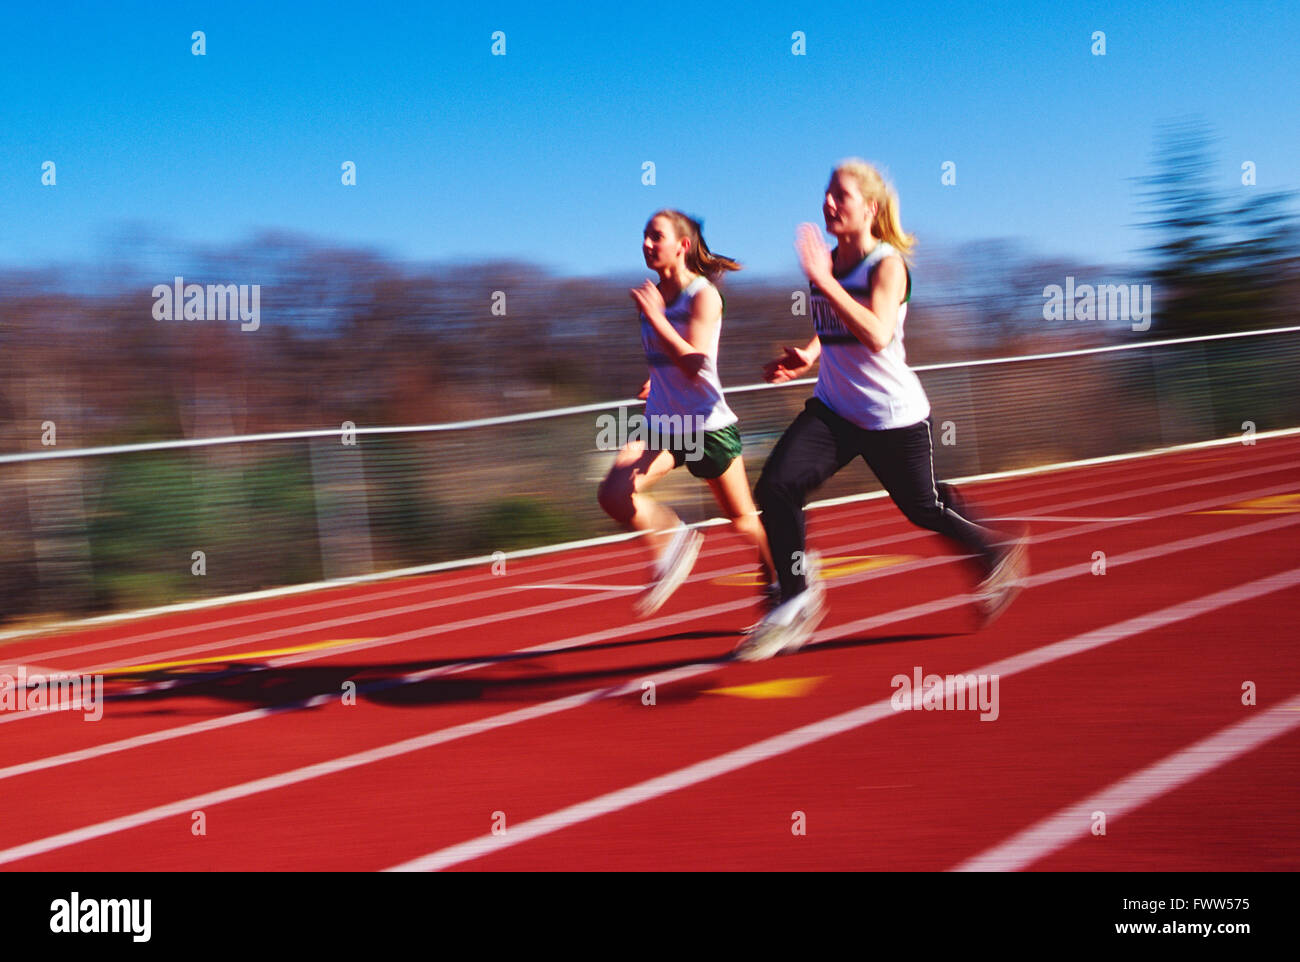 Pan Unschärfe Blick auf High School Mädchen Leichtathletik-Team läuft auf synthetische Oberfläche Outdoor-Strecke Stockfoto